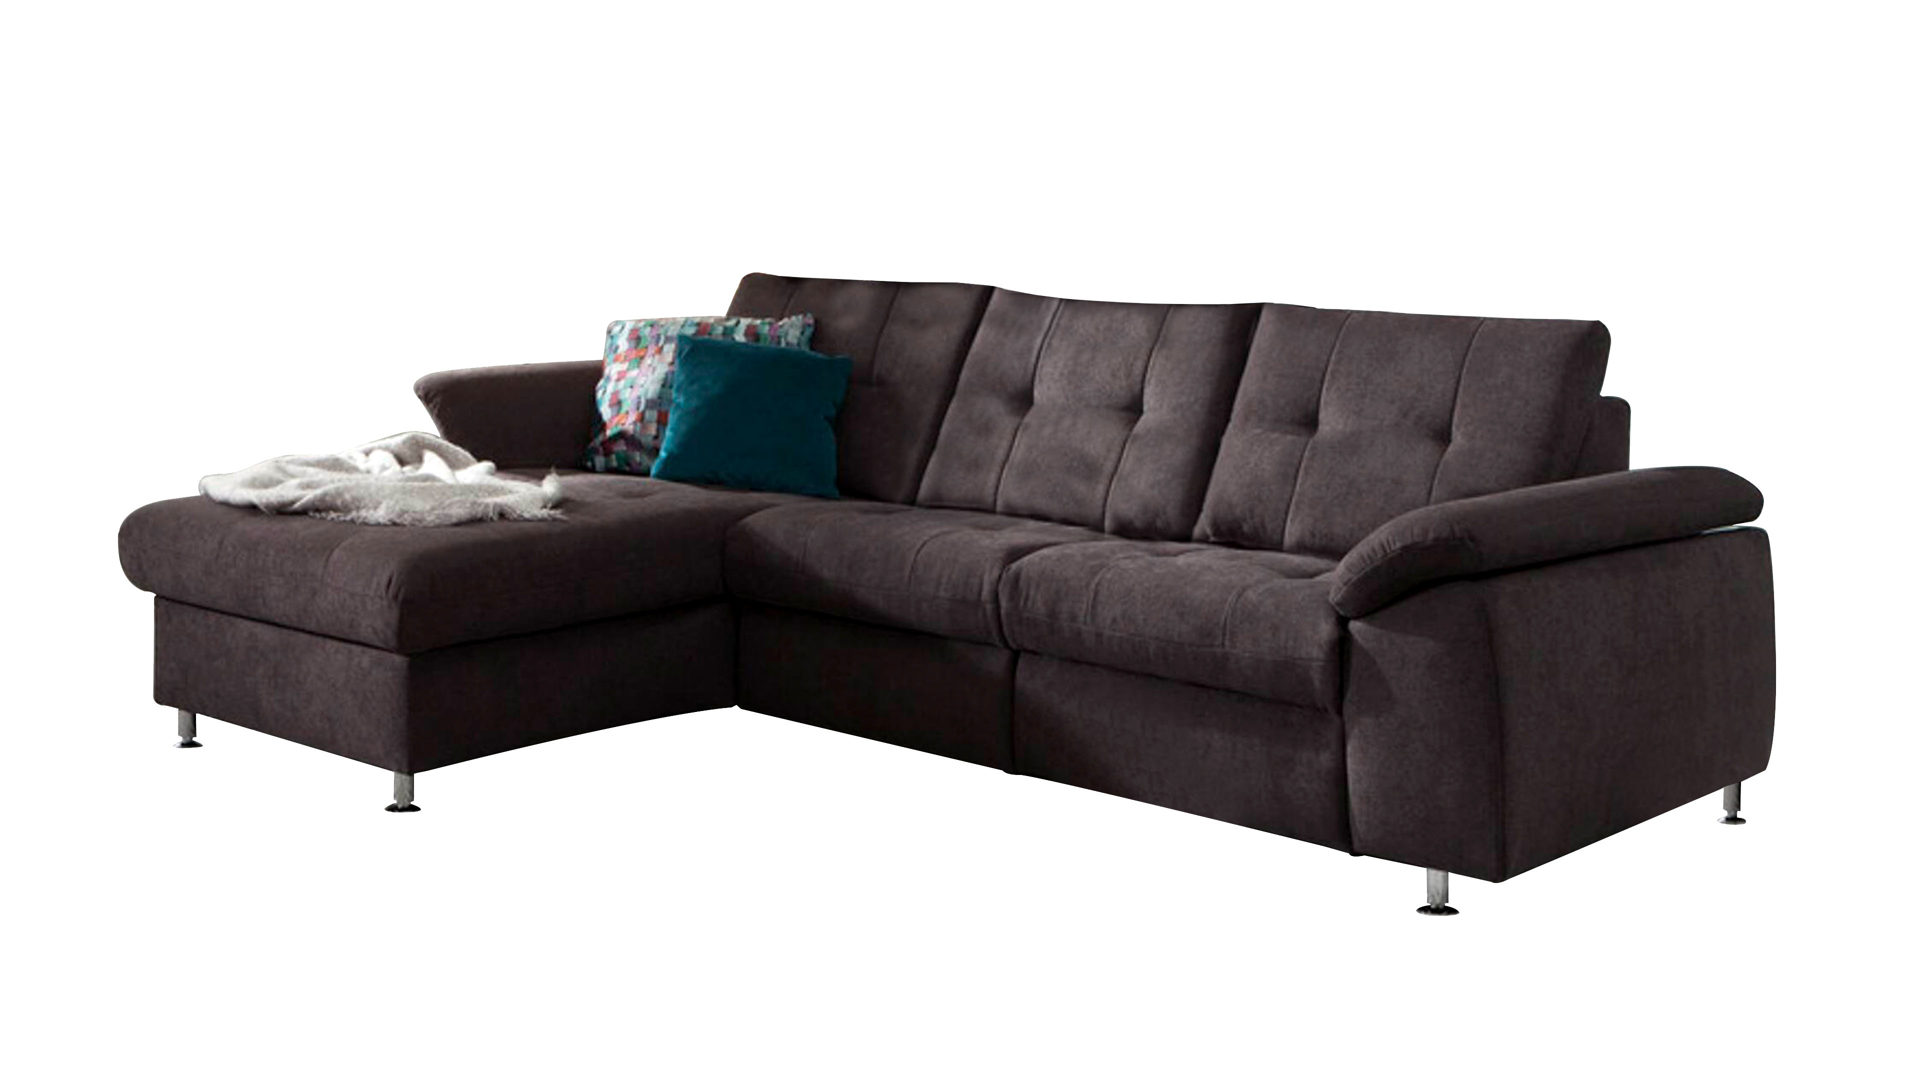 Ecksofa Megapol aus Stoff in Anthrazit Eckkombination VS-MP1056 aus Canape Sofa und Couch anthrazitfarbene Chenille Nemo & Metallfüße – Stellfläche ca. 169 x 261 cm